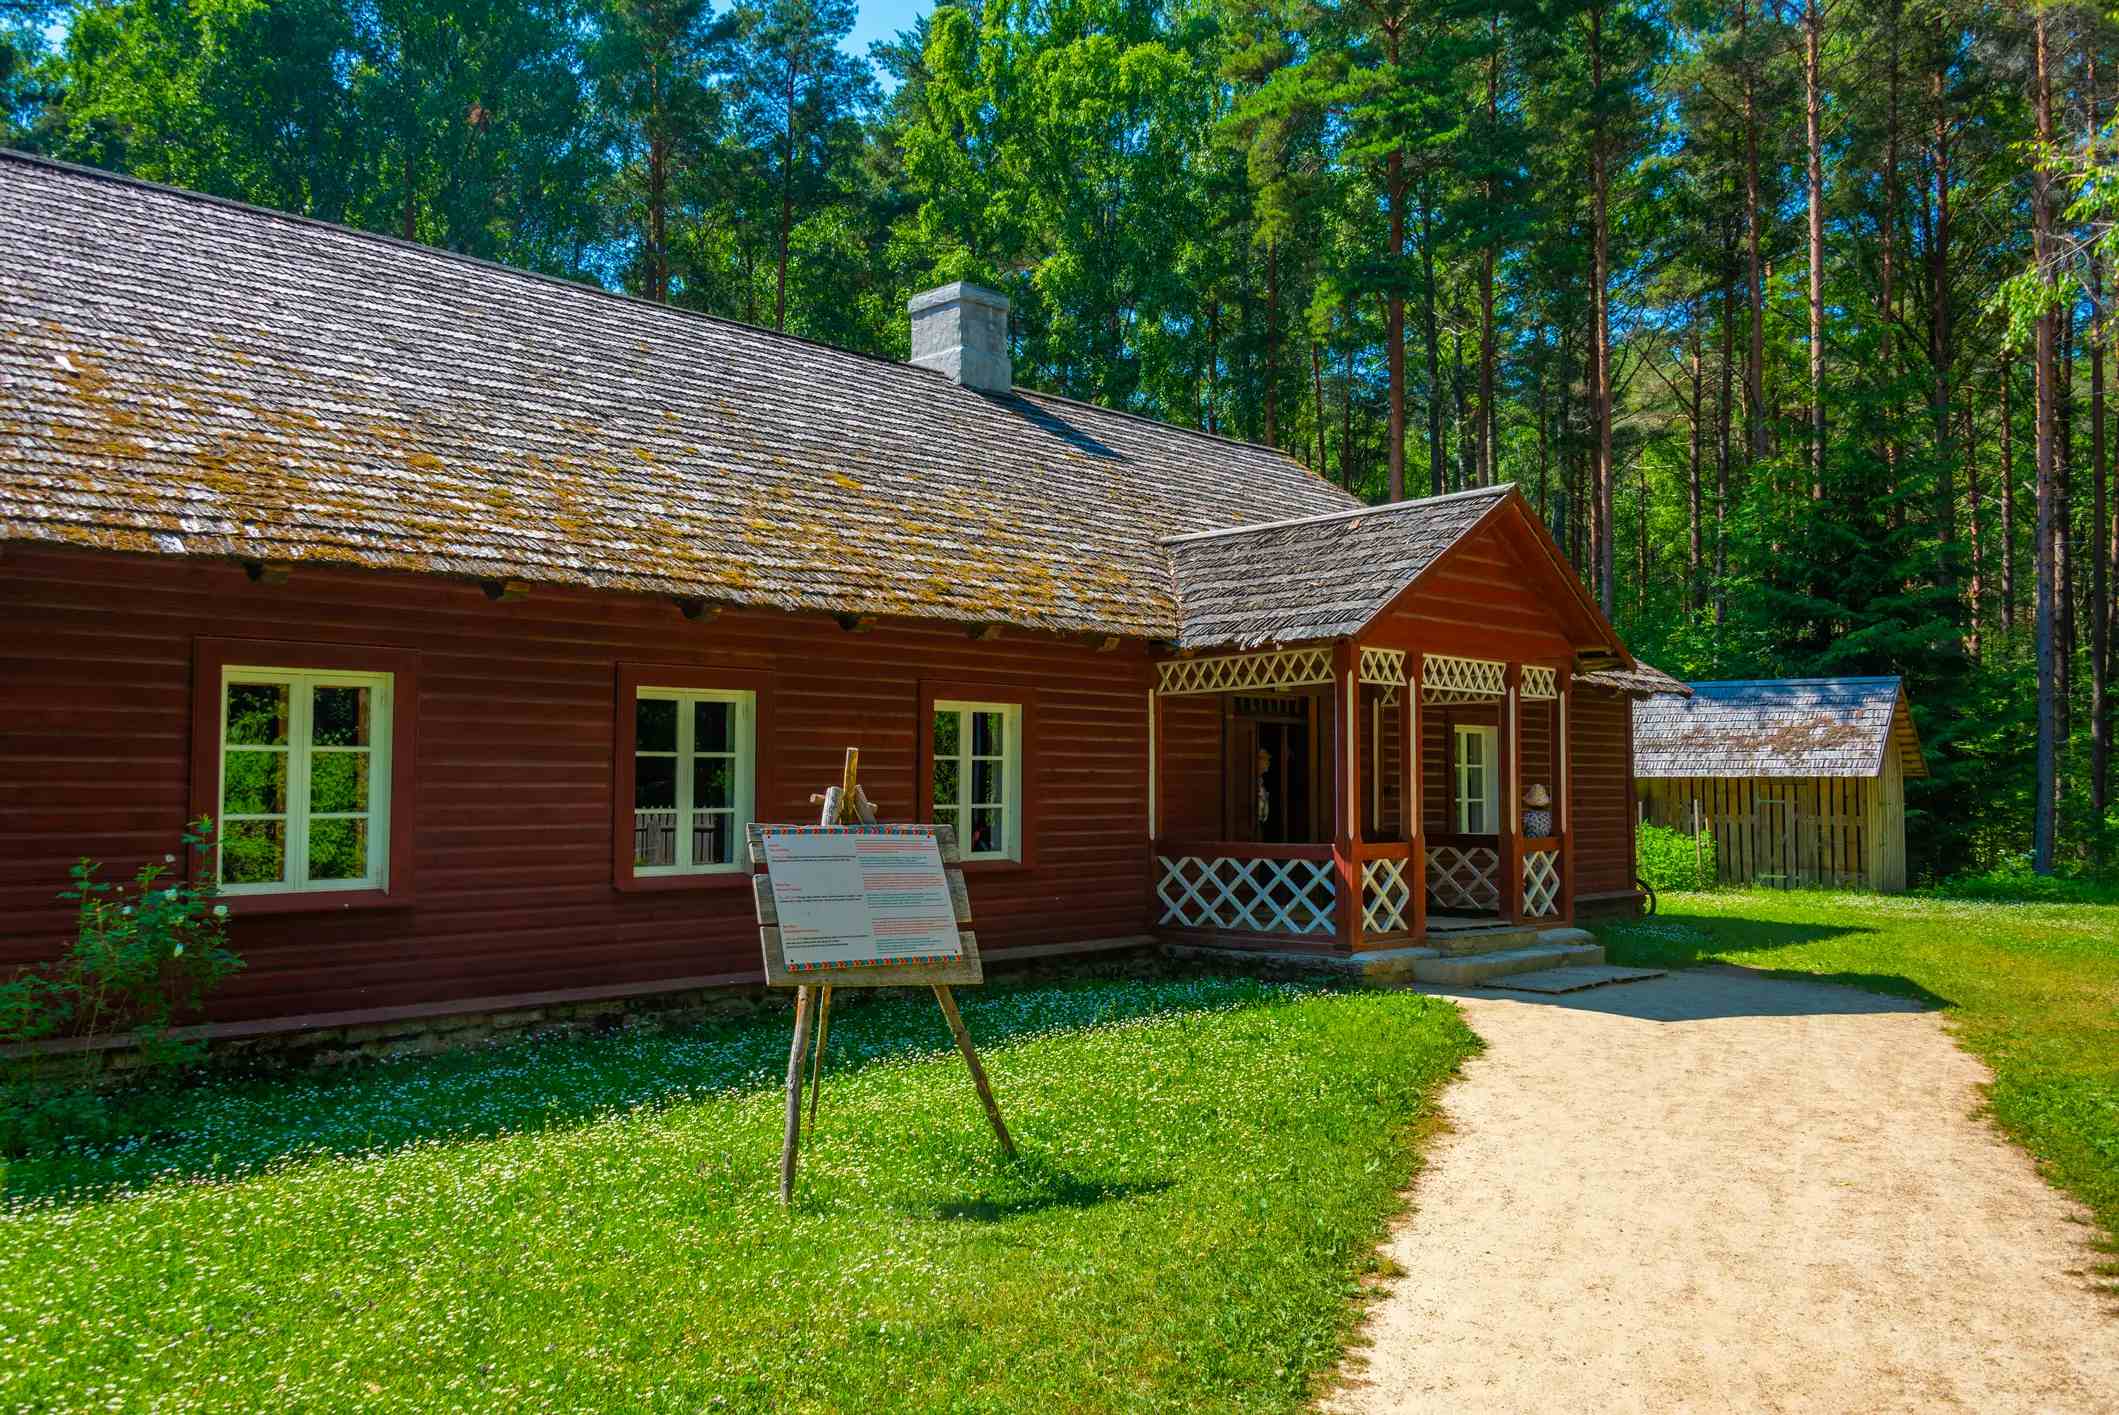 エストニア野外博物館 image